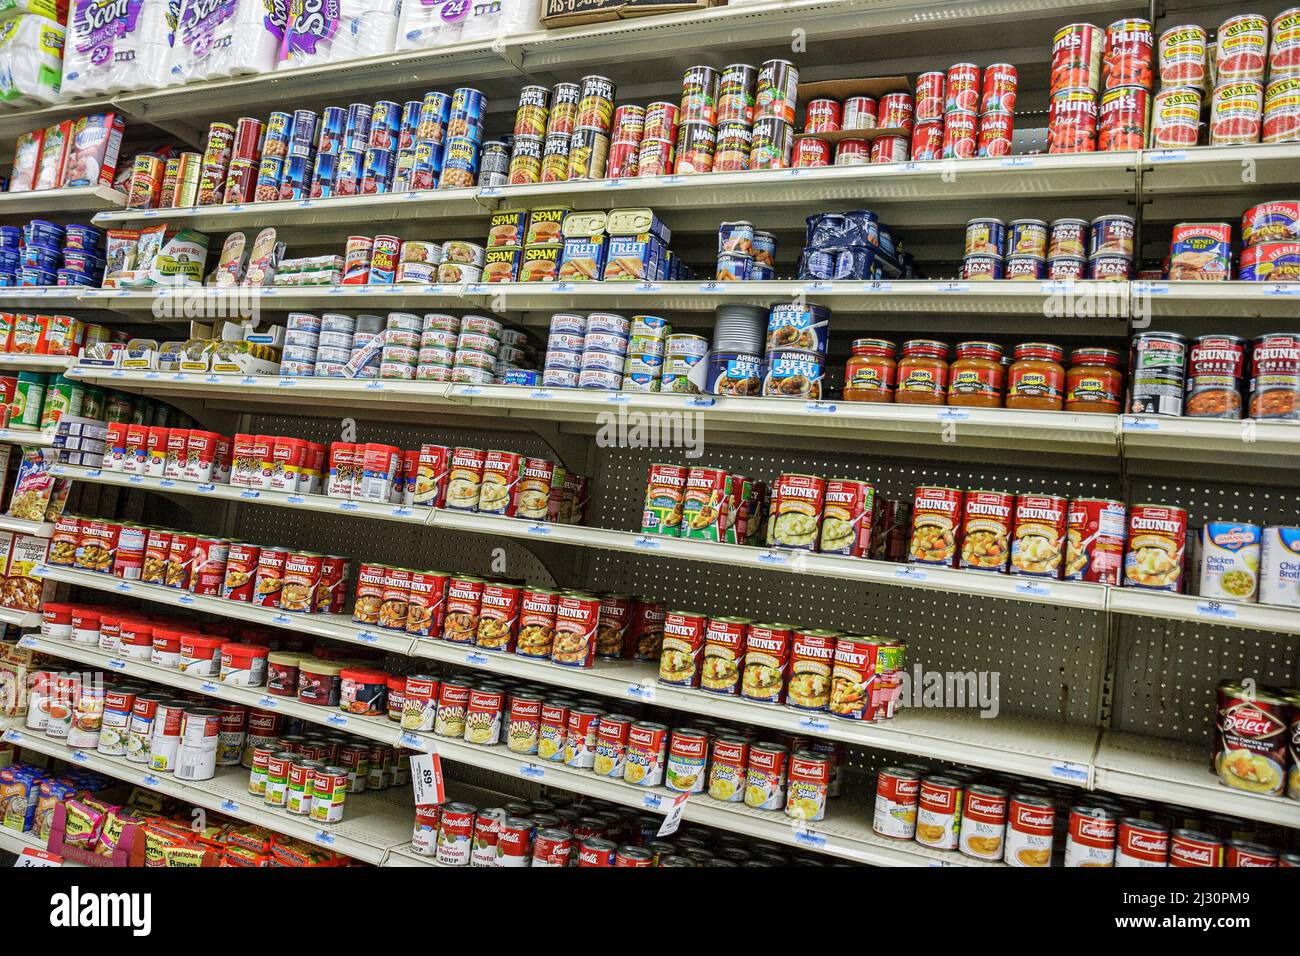 Miami Florida, Kmart im Inneren Gang Konserven Lebensmittel Suppen Fleisch, Regale Regale zeigen Verkaufspreise Stockfoto